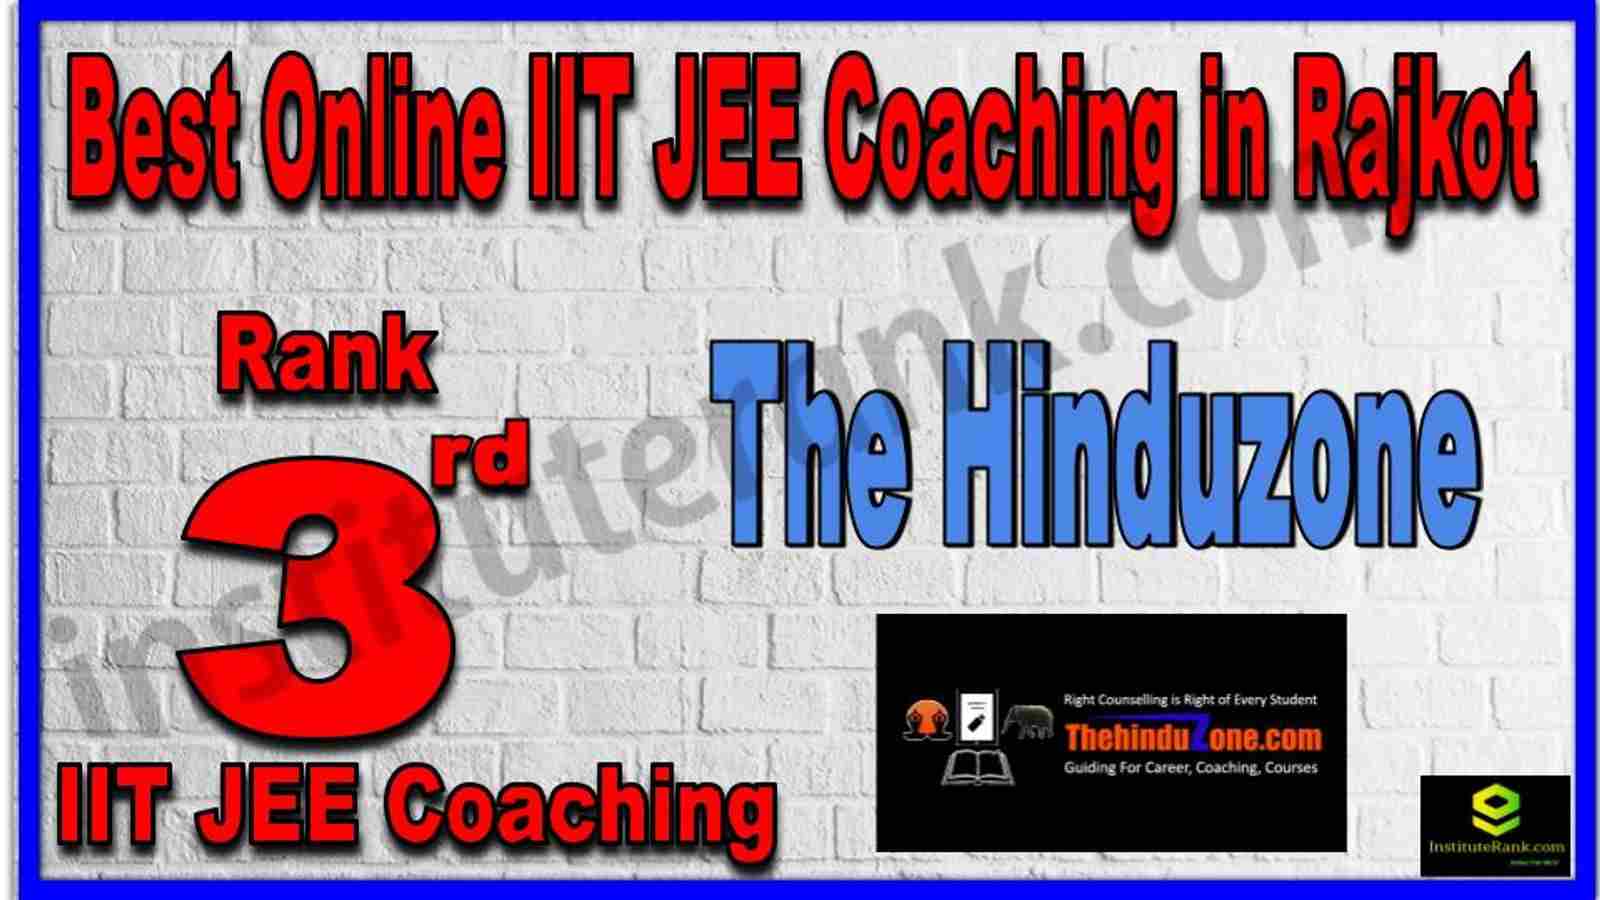 Rank 3rd Best Online IIT JEE Coaching in Rajkot